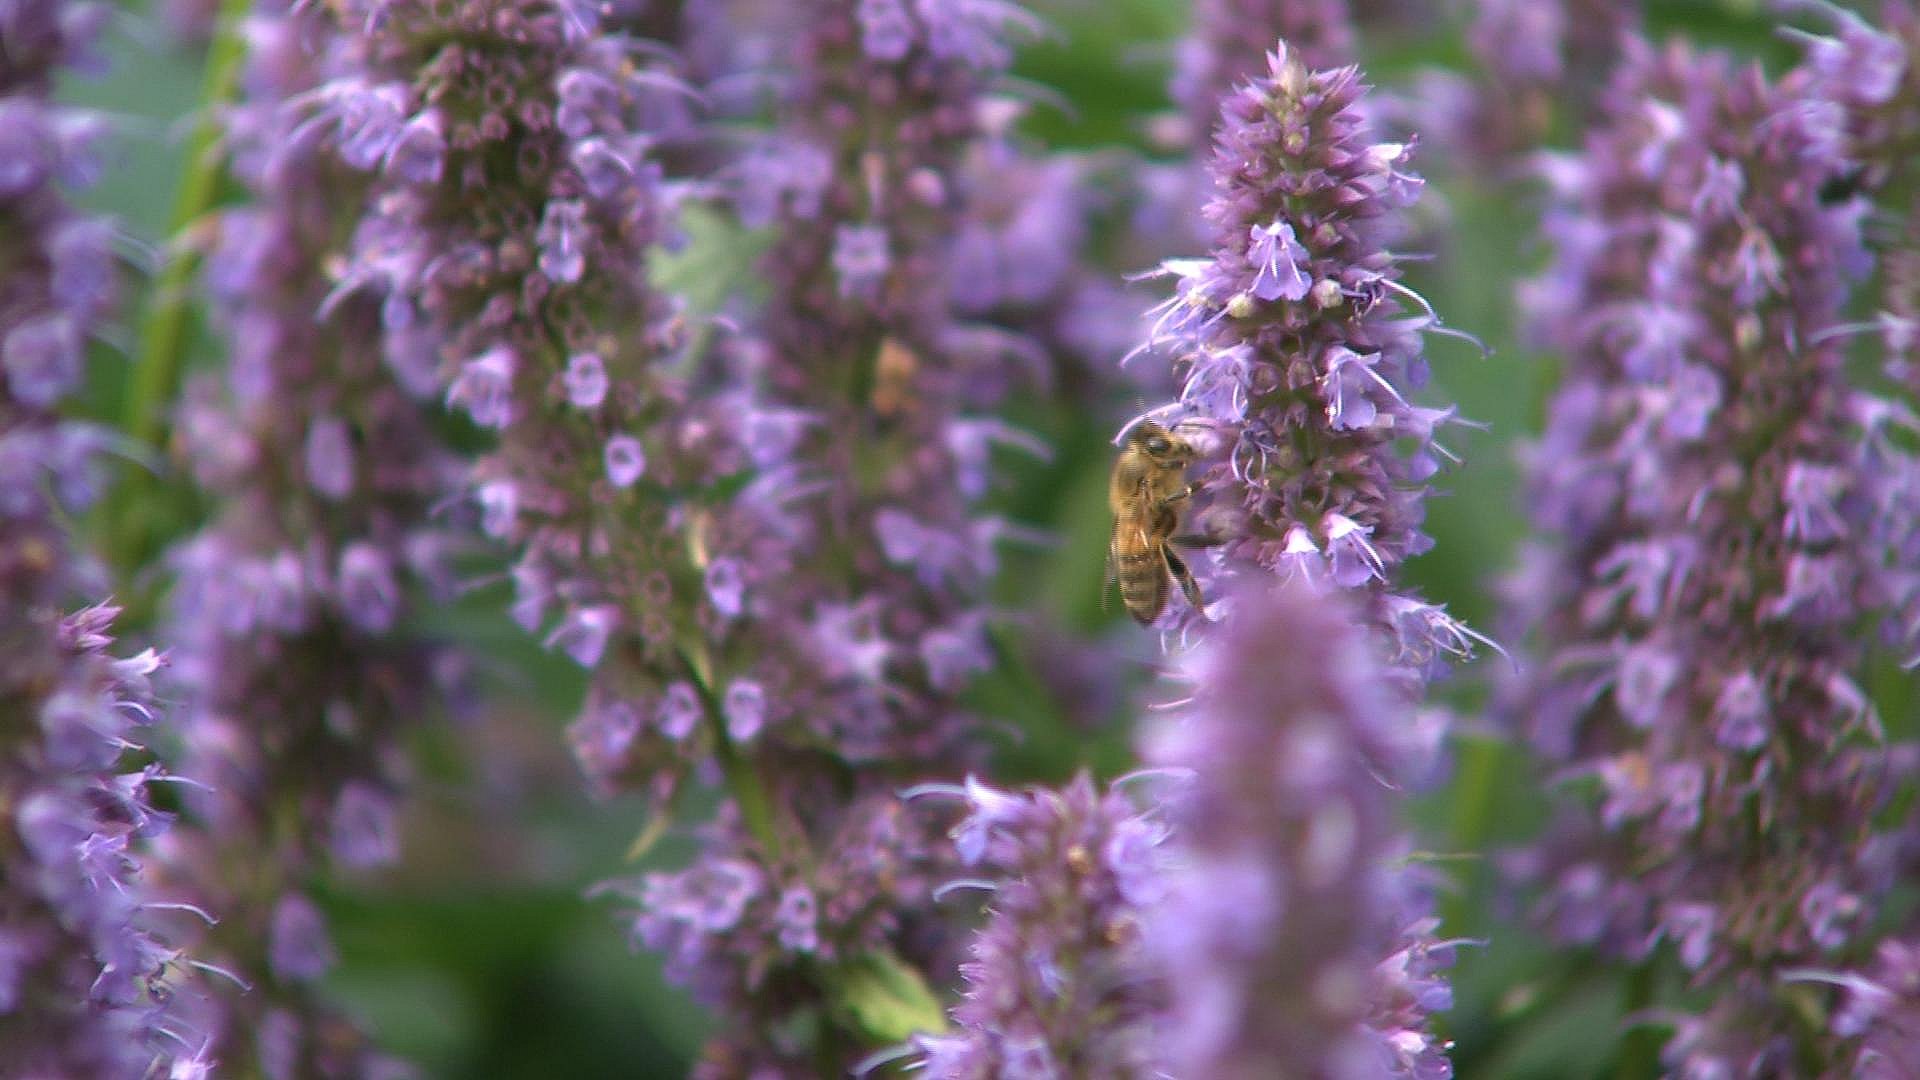 Pollen fra  indsamlet af bier i Letlands uberørte natur.  Frisk sending.